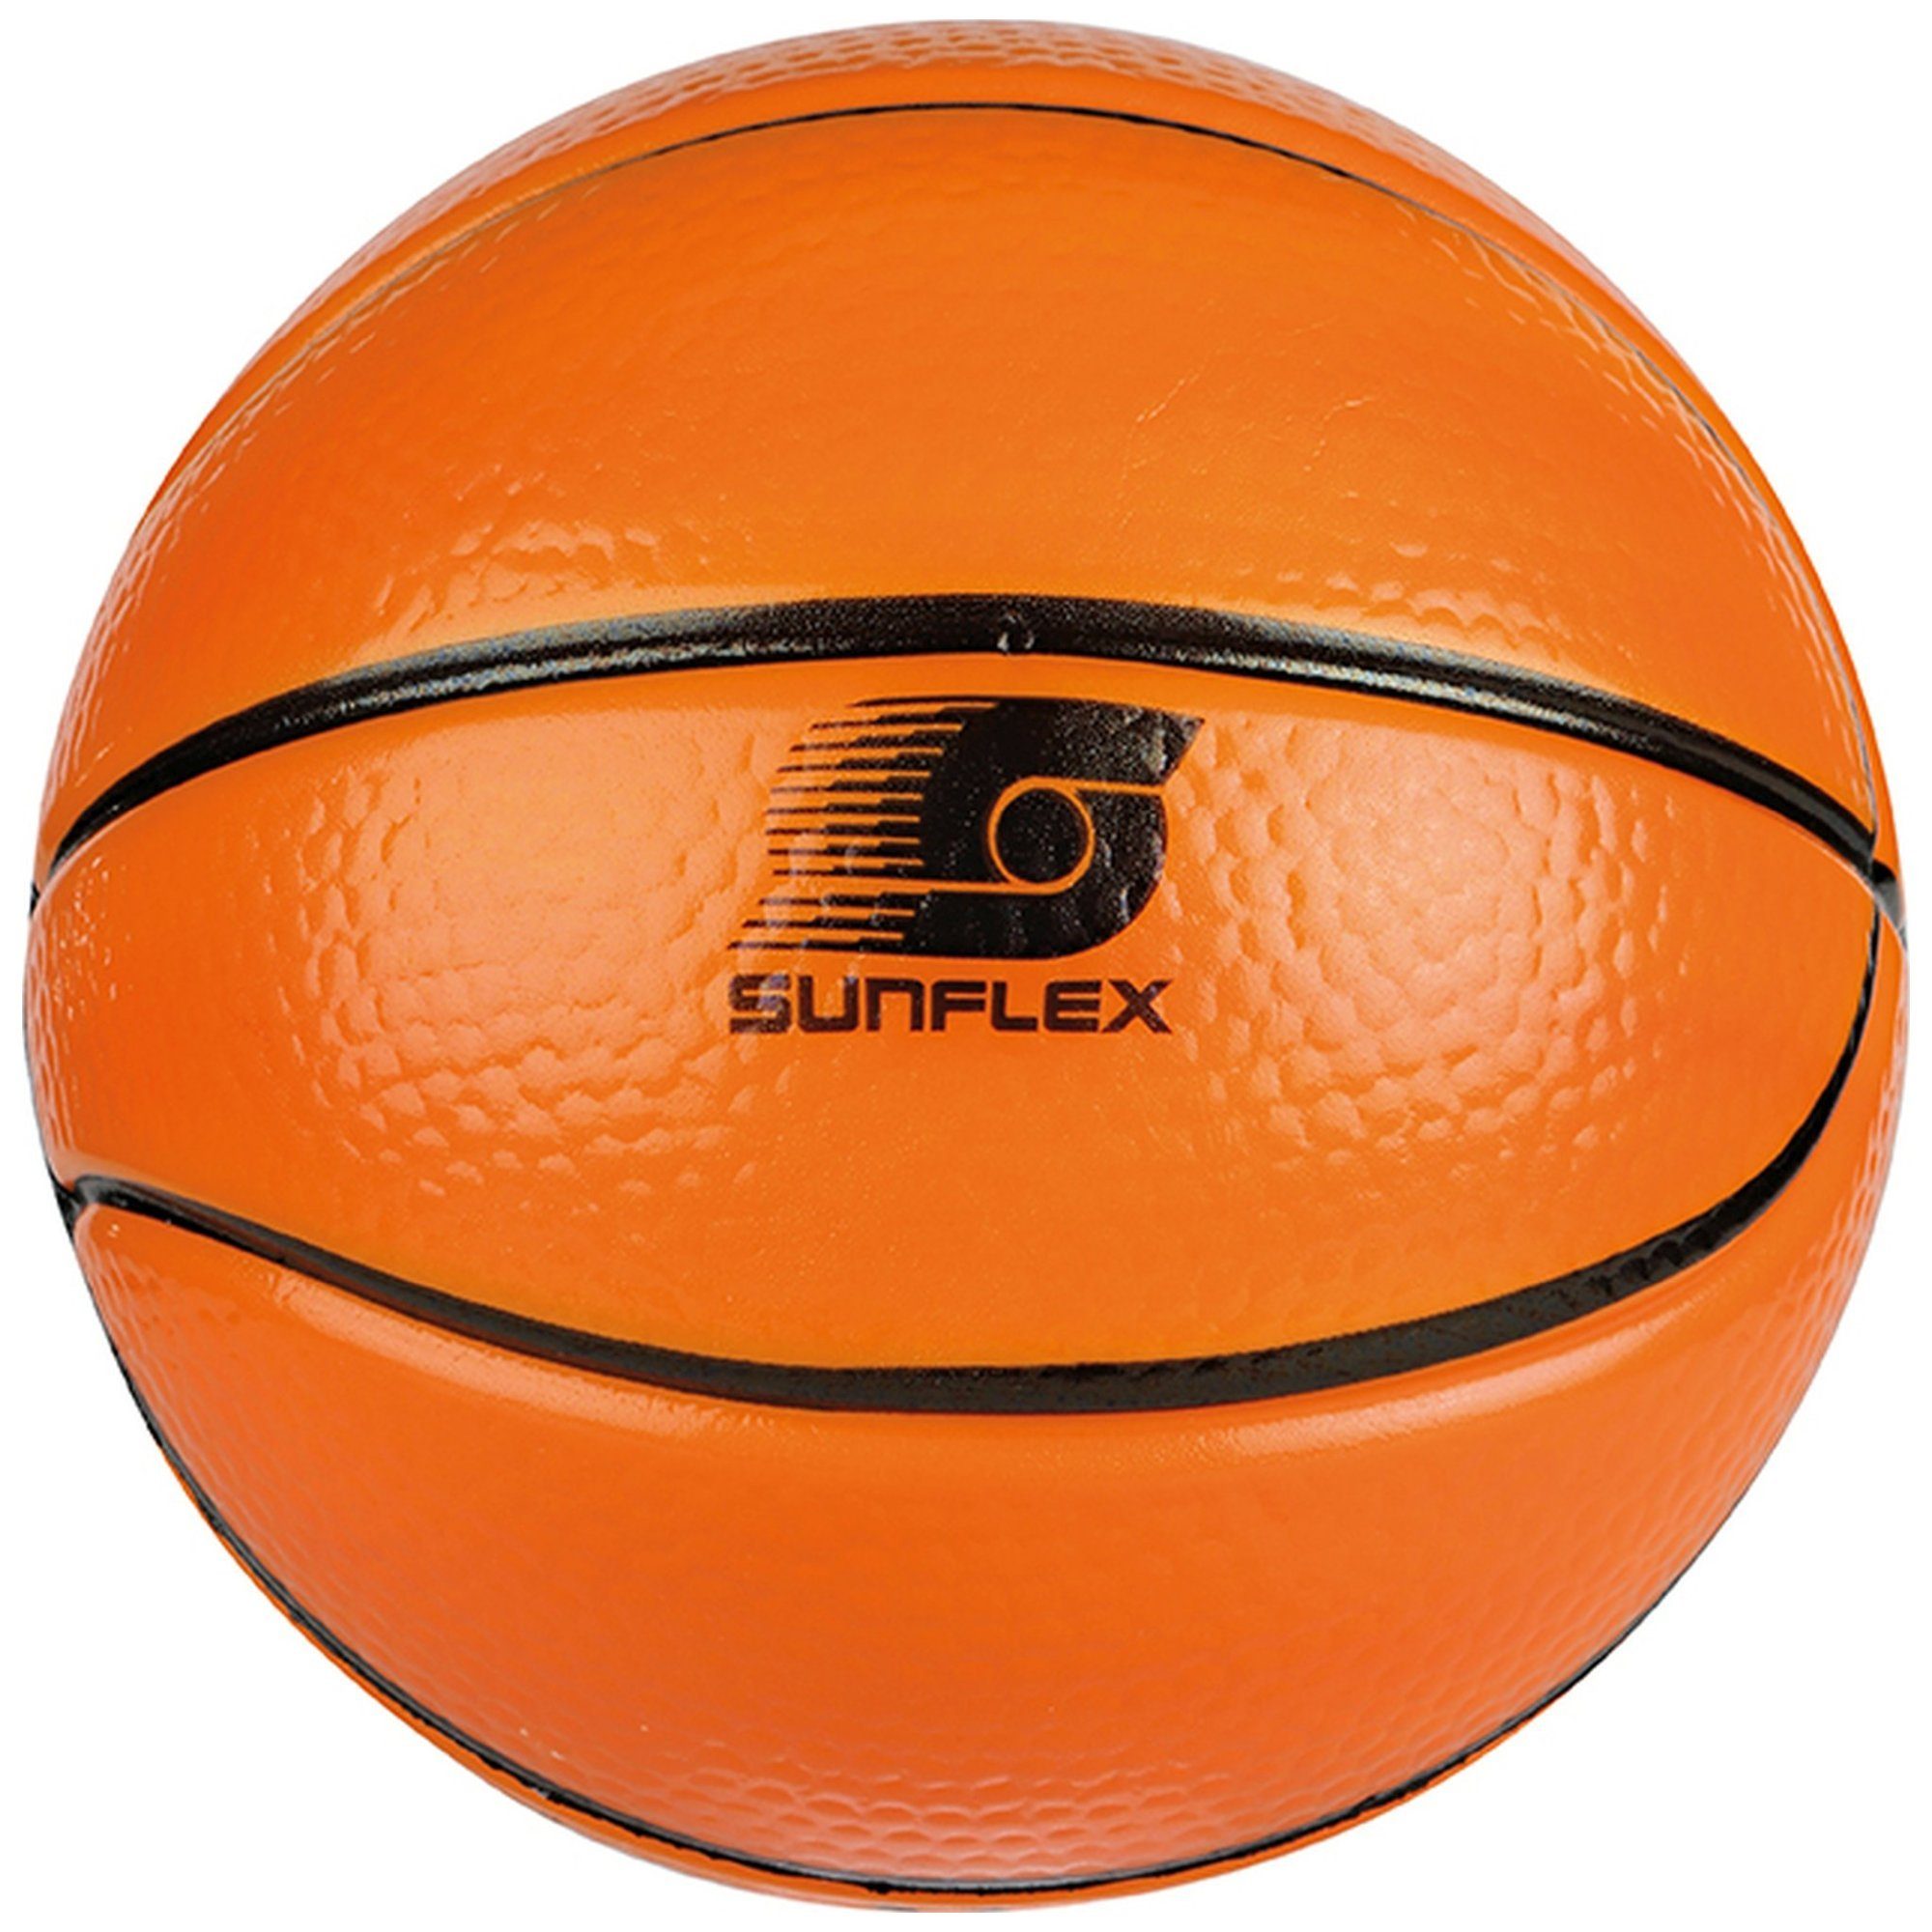 Sunflex Basketball sunflex Softball Basketball